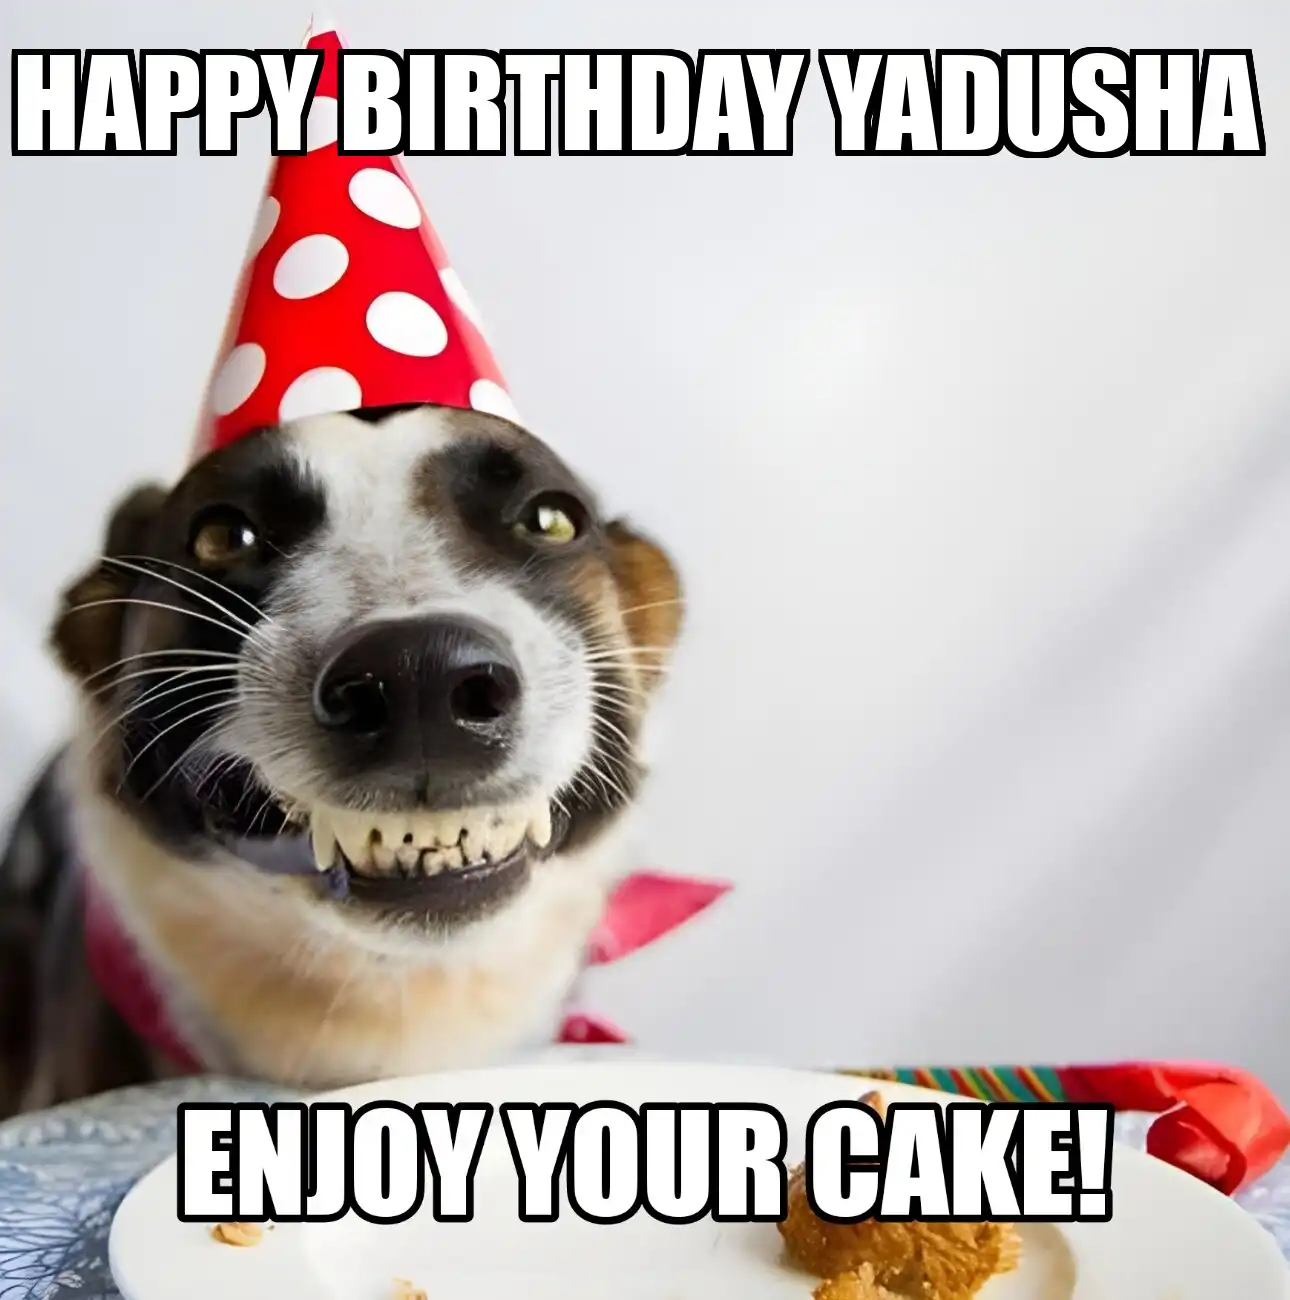 Happy Birthday Yadusha Enjoy Your Cake Dog Meme